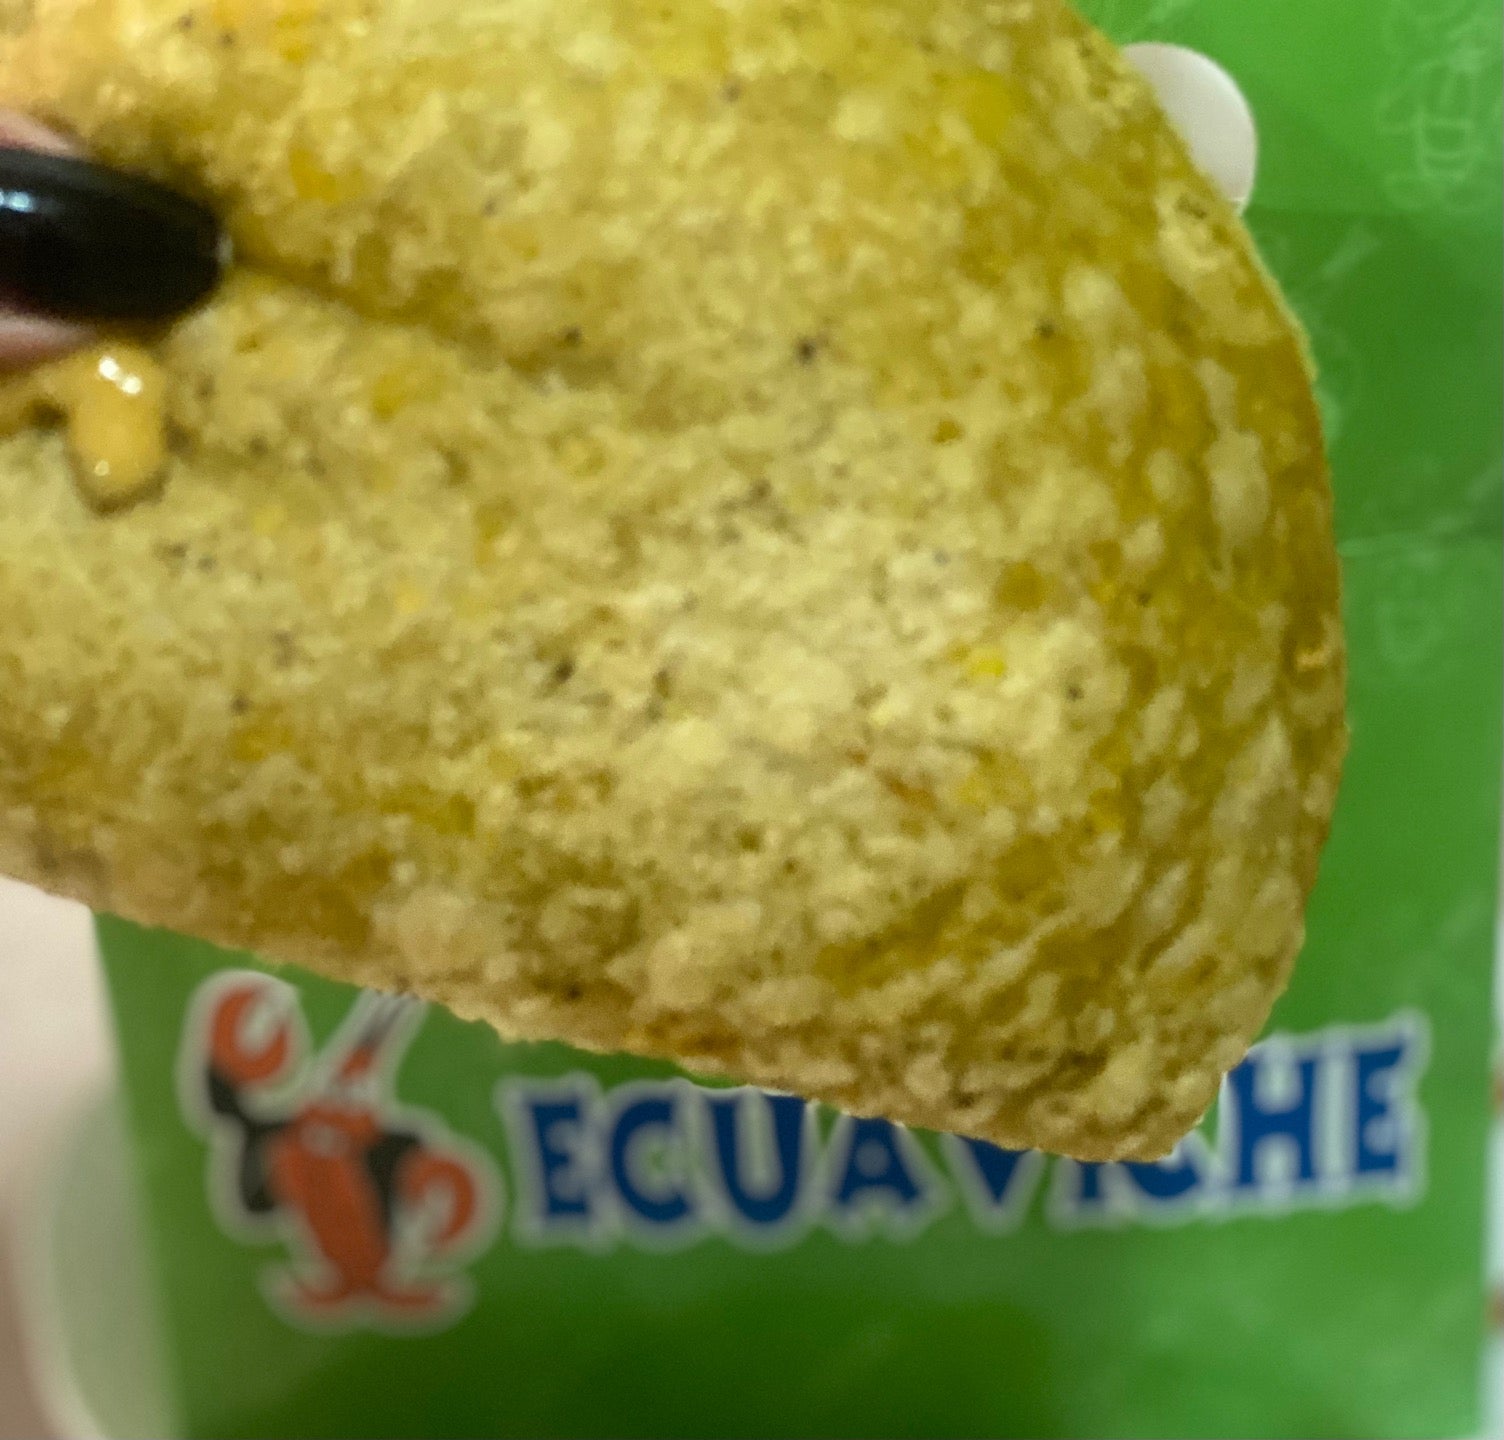 Ecuaviche